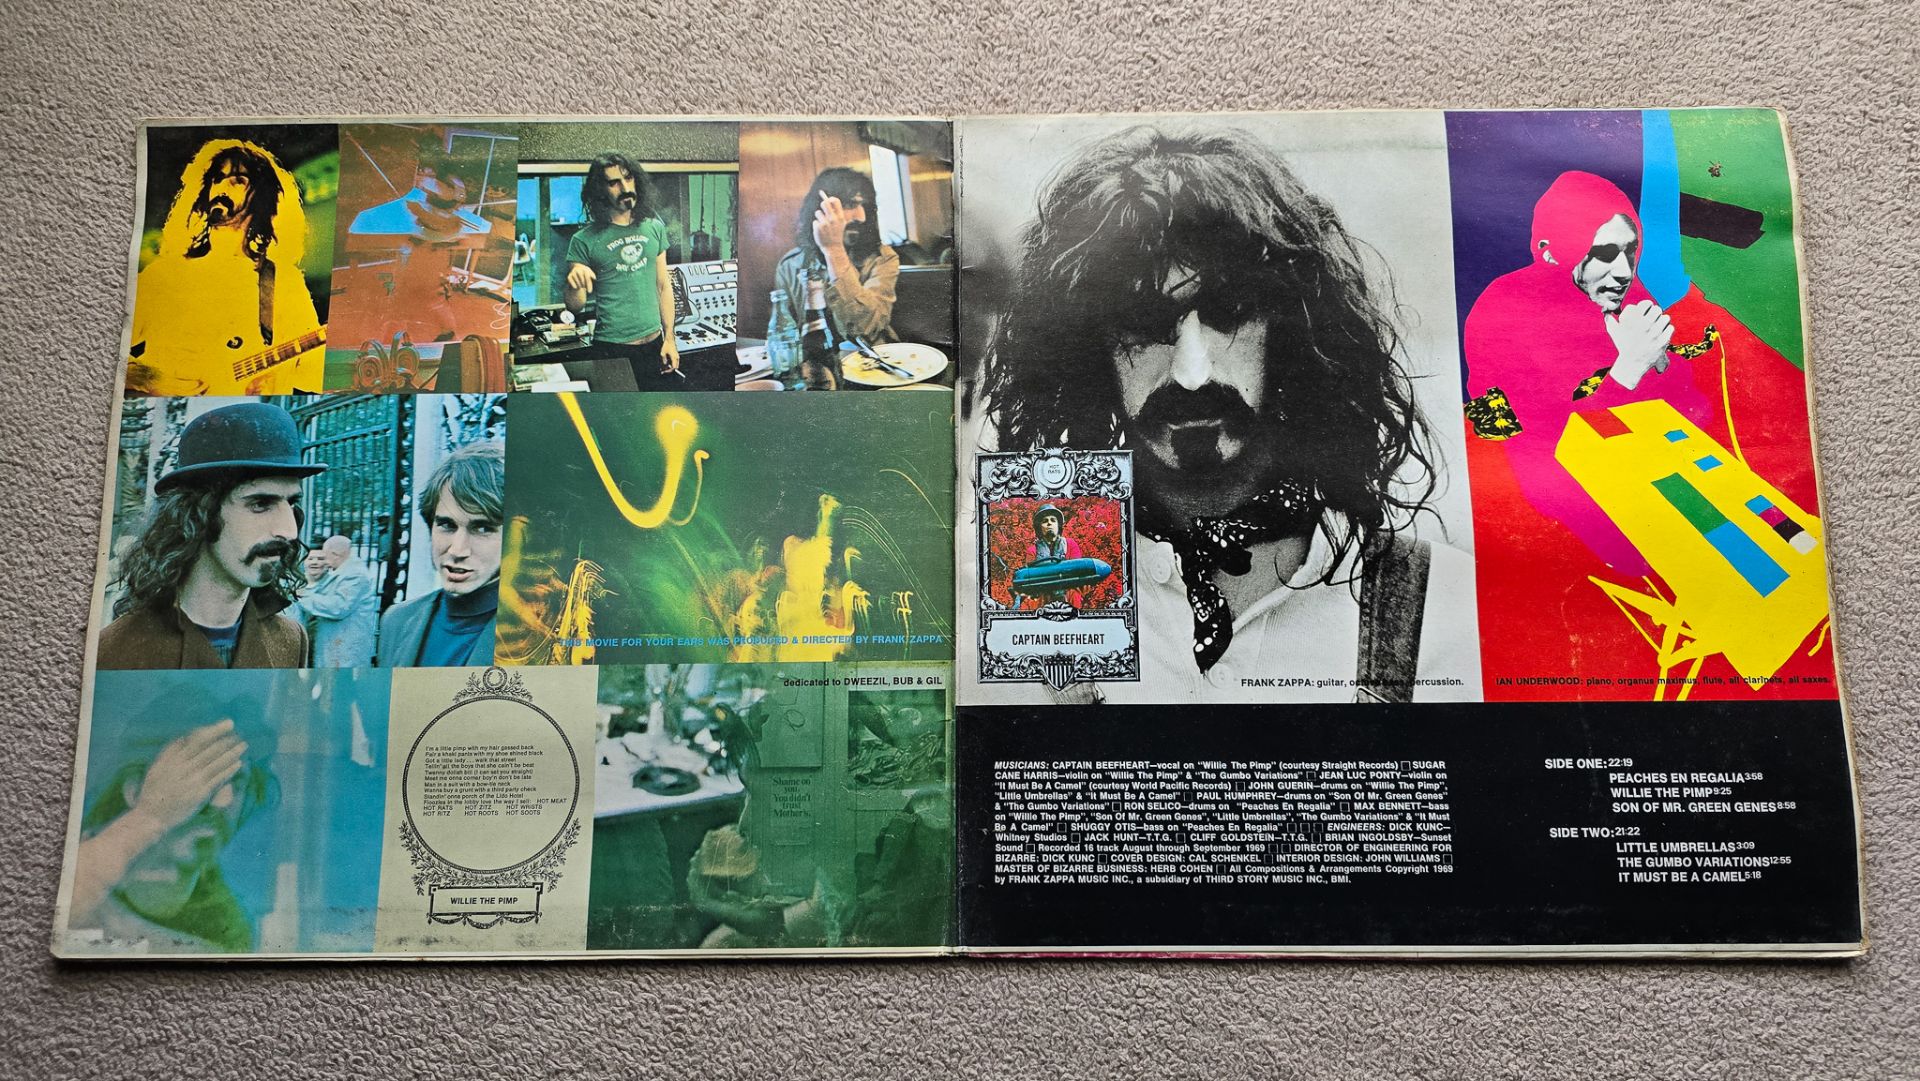 Frank Zappa ‎– Hot Rats Original 1st UK Pressing vinyl LP - Image 3 of 6